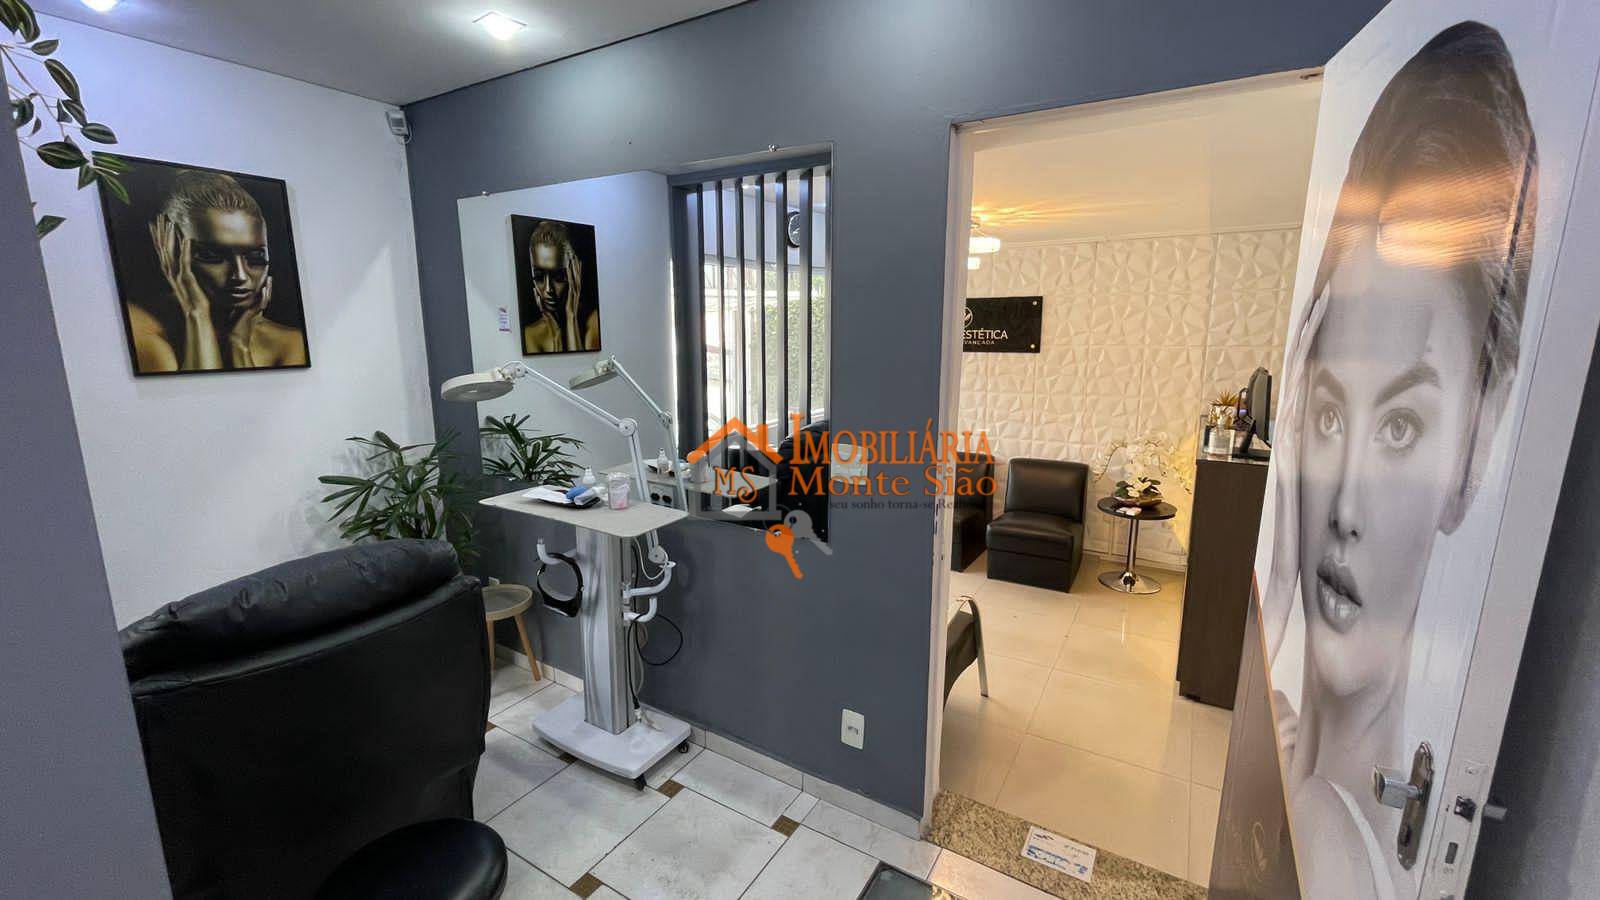 Casa com 5 dormitórios para alugar por R$ 9.790,00/mês - Jardim Santa Mena - Guarulhos/SP